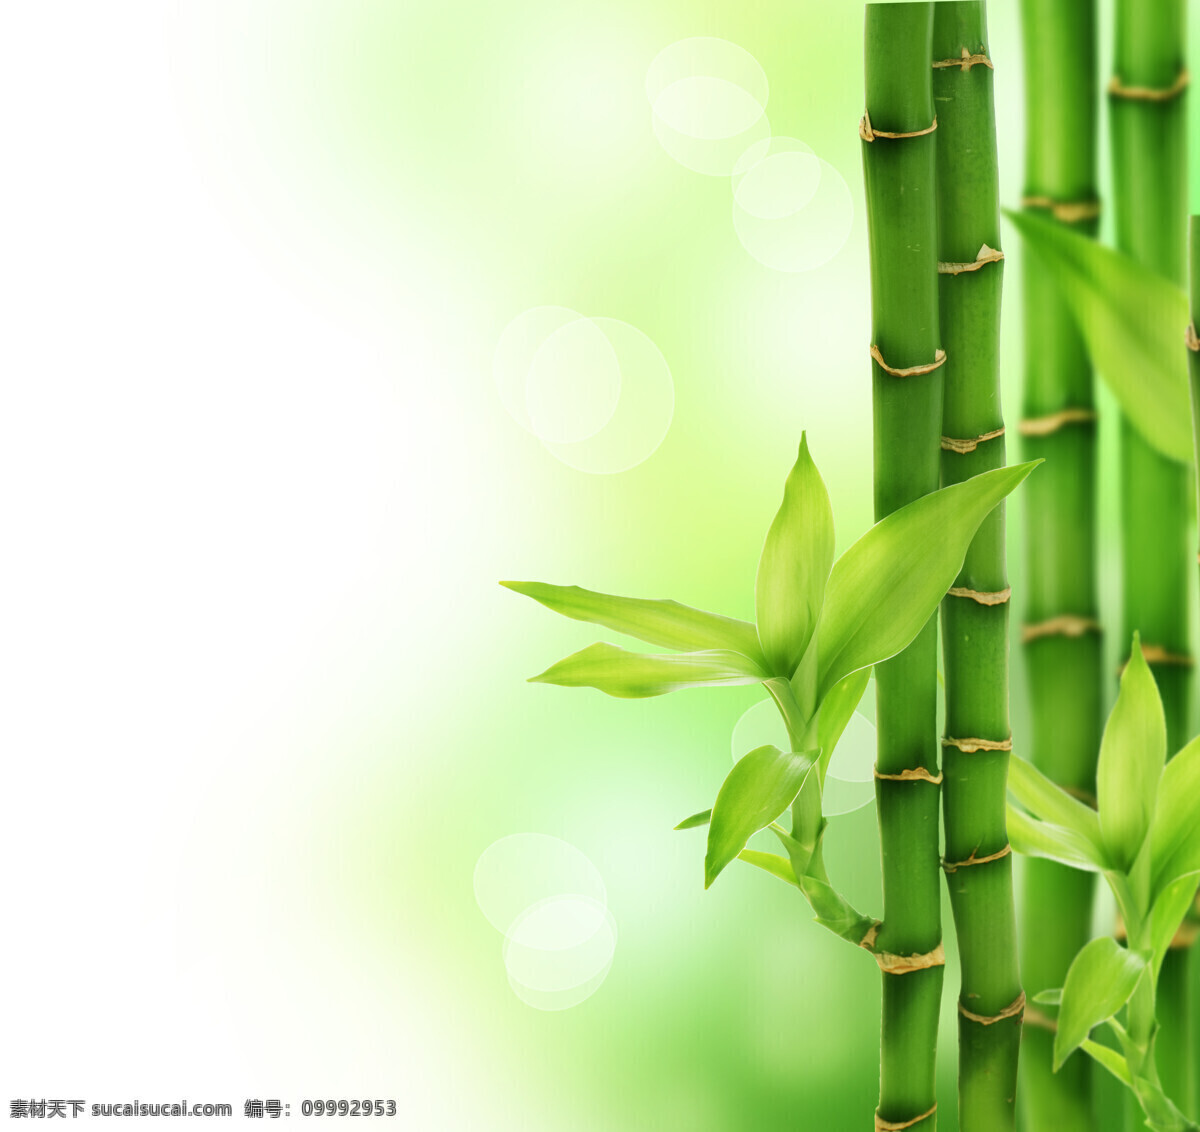 保护环境 彩色 创意广告 春天 高清图片 公益广告 环保 绿色 竹子 设计素材 模板下载 绿色竹子 竹叶 叶子 绿叶 春的气息 绿色家园 绿色环保 世界 我们的家园 联想 绿色家园系列 展板 公益展板设计